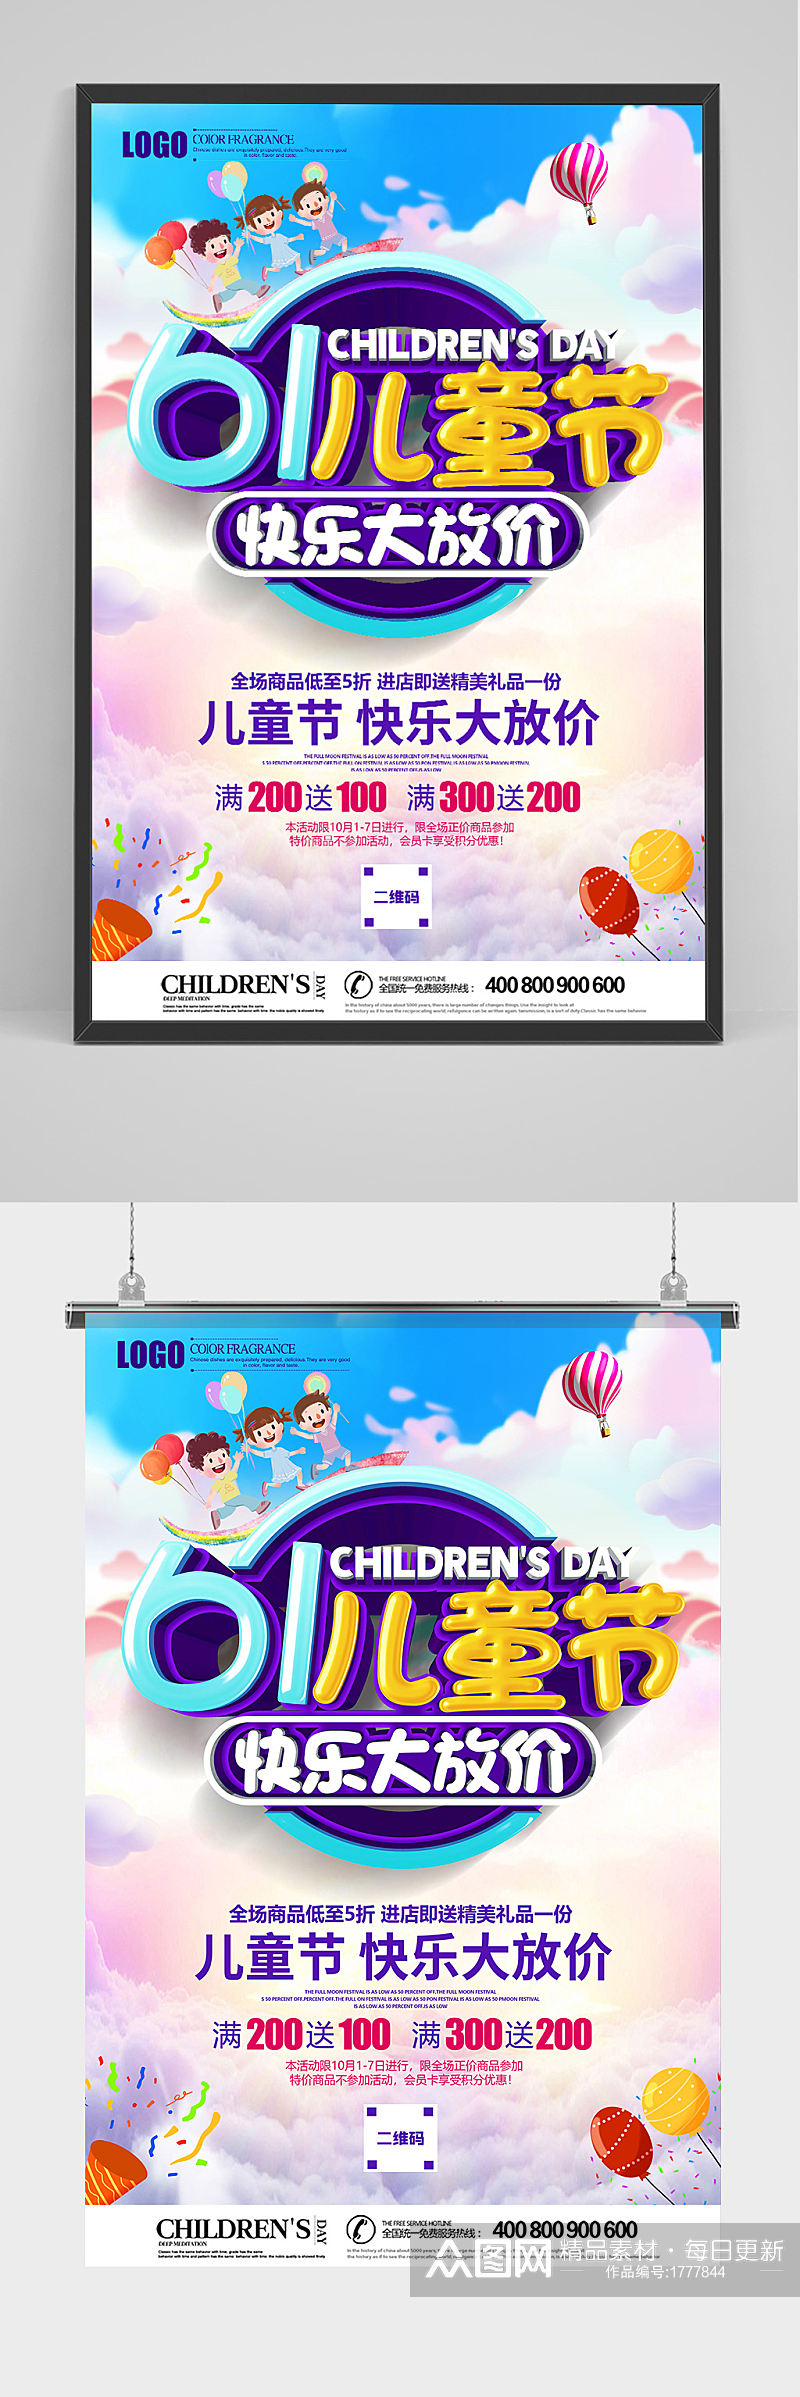 立体61儿童节快乐大放价促销海报素材